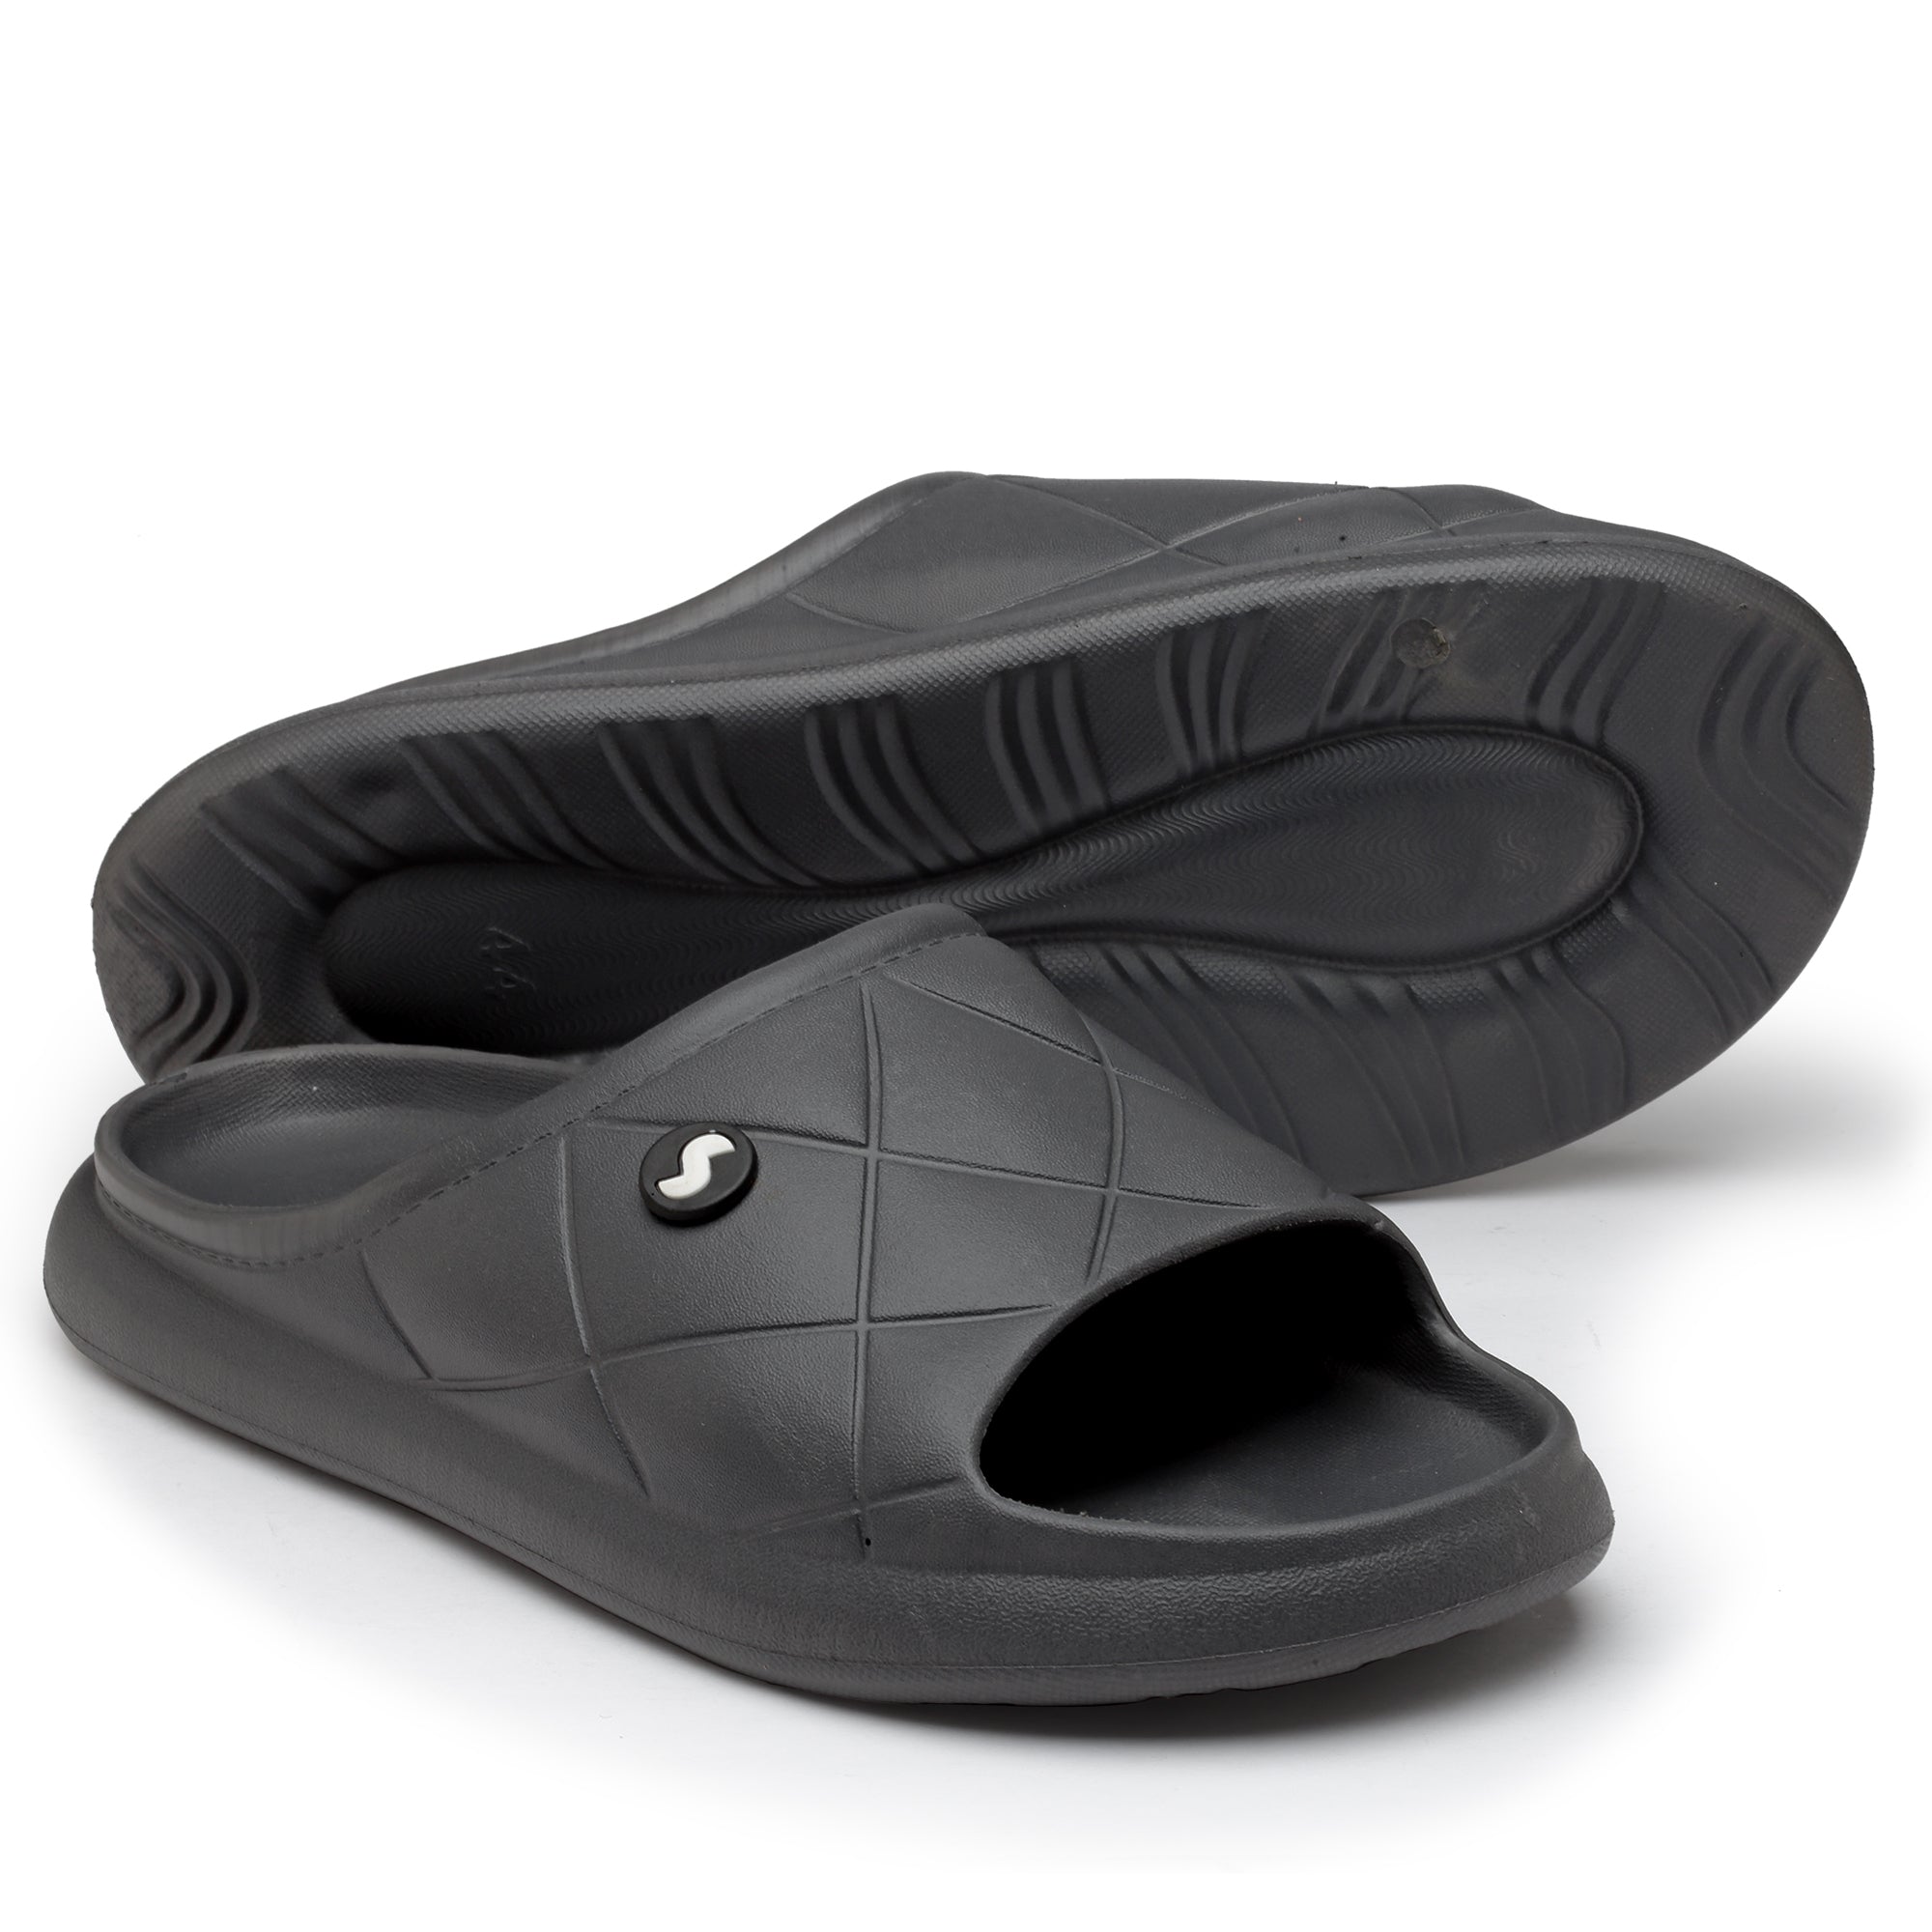 GARG SHOOZ - Flip flops Slidders Full stock #supreme #slidders